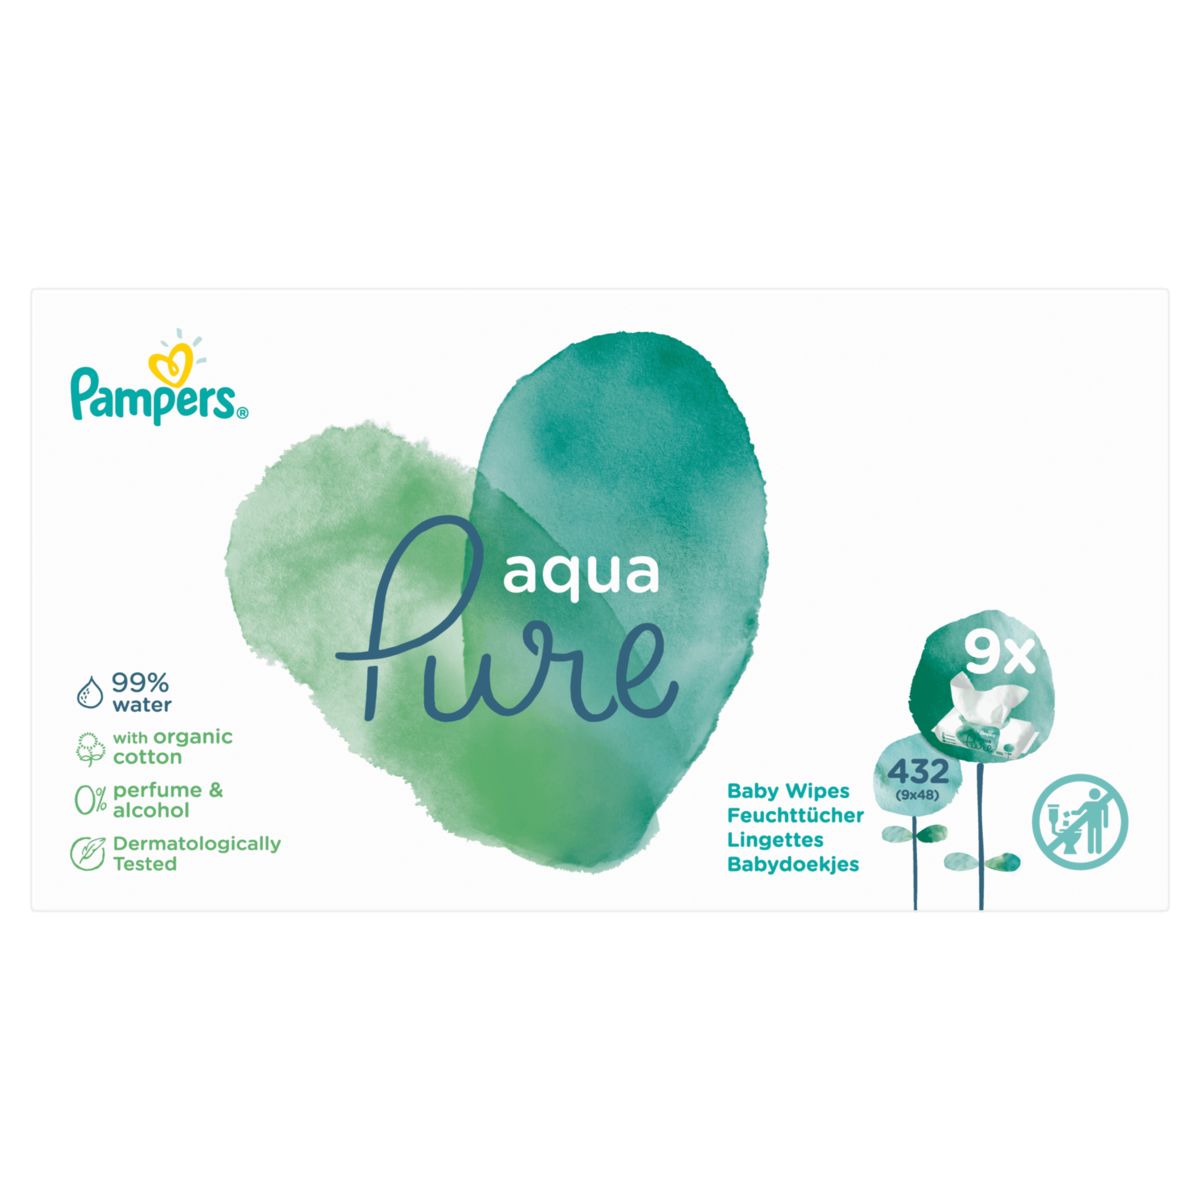 Pampers Aqua Pure Lingettes Pour Bébé 9 Packs = 432 Lingettes